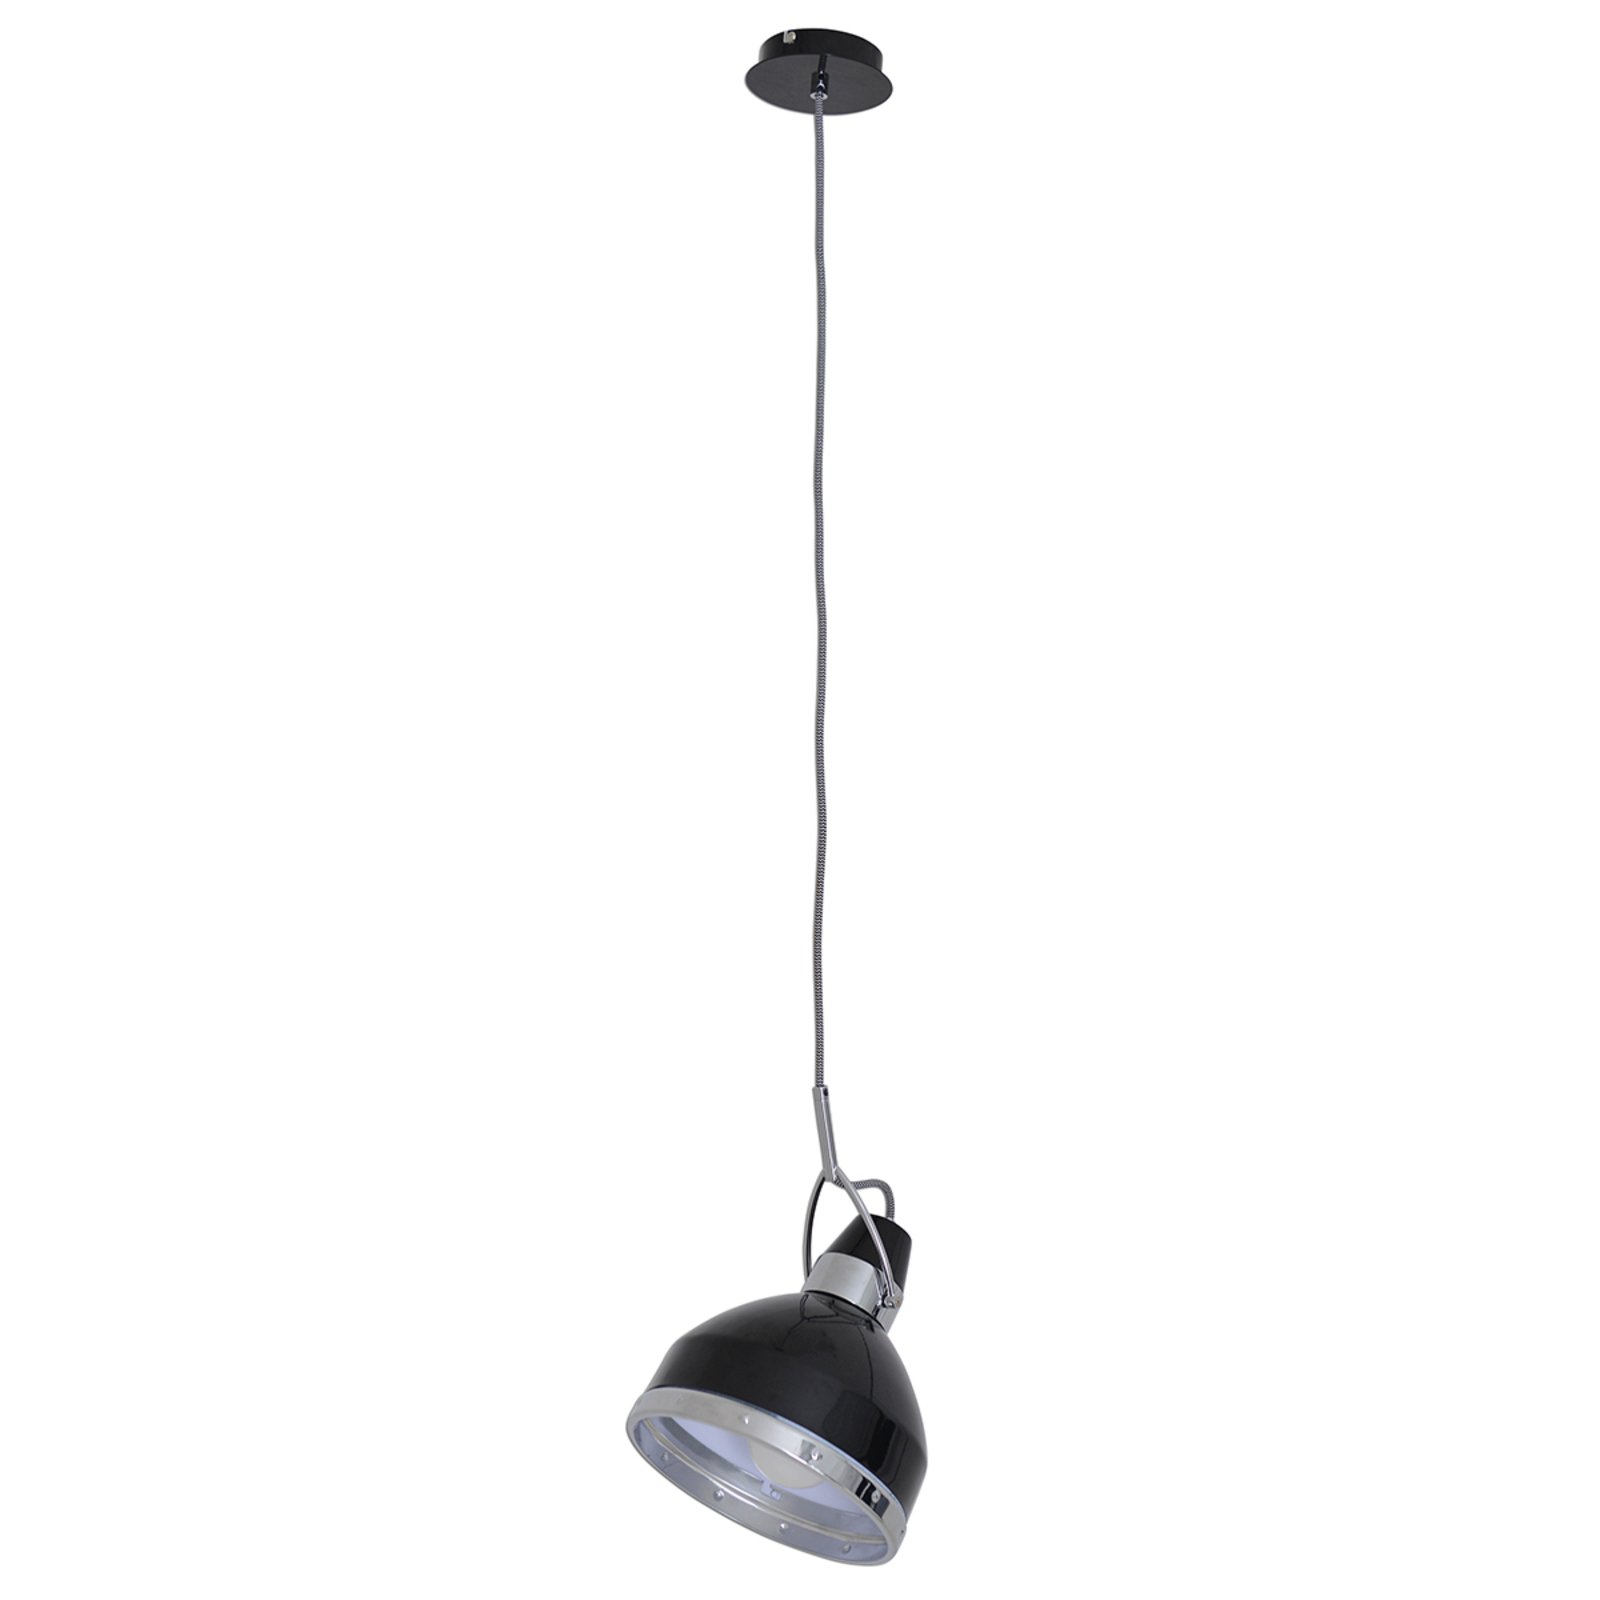 Industrijski dizajnirana viseća lampa Britta, crna